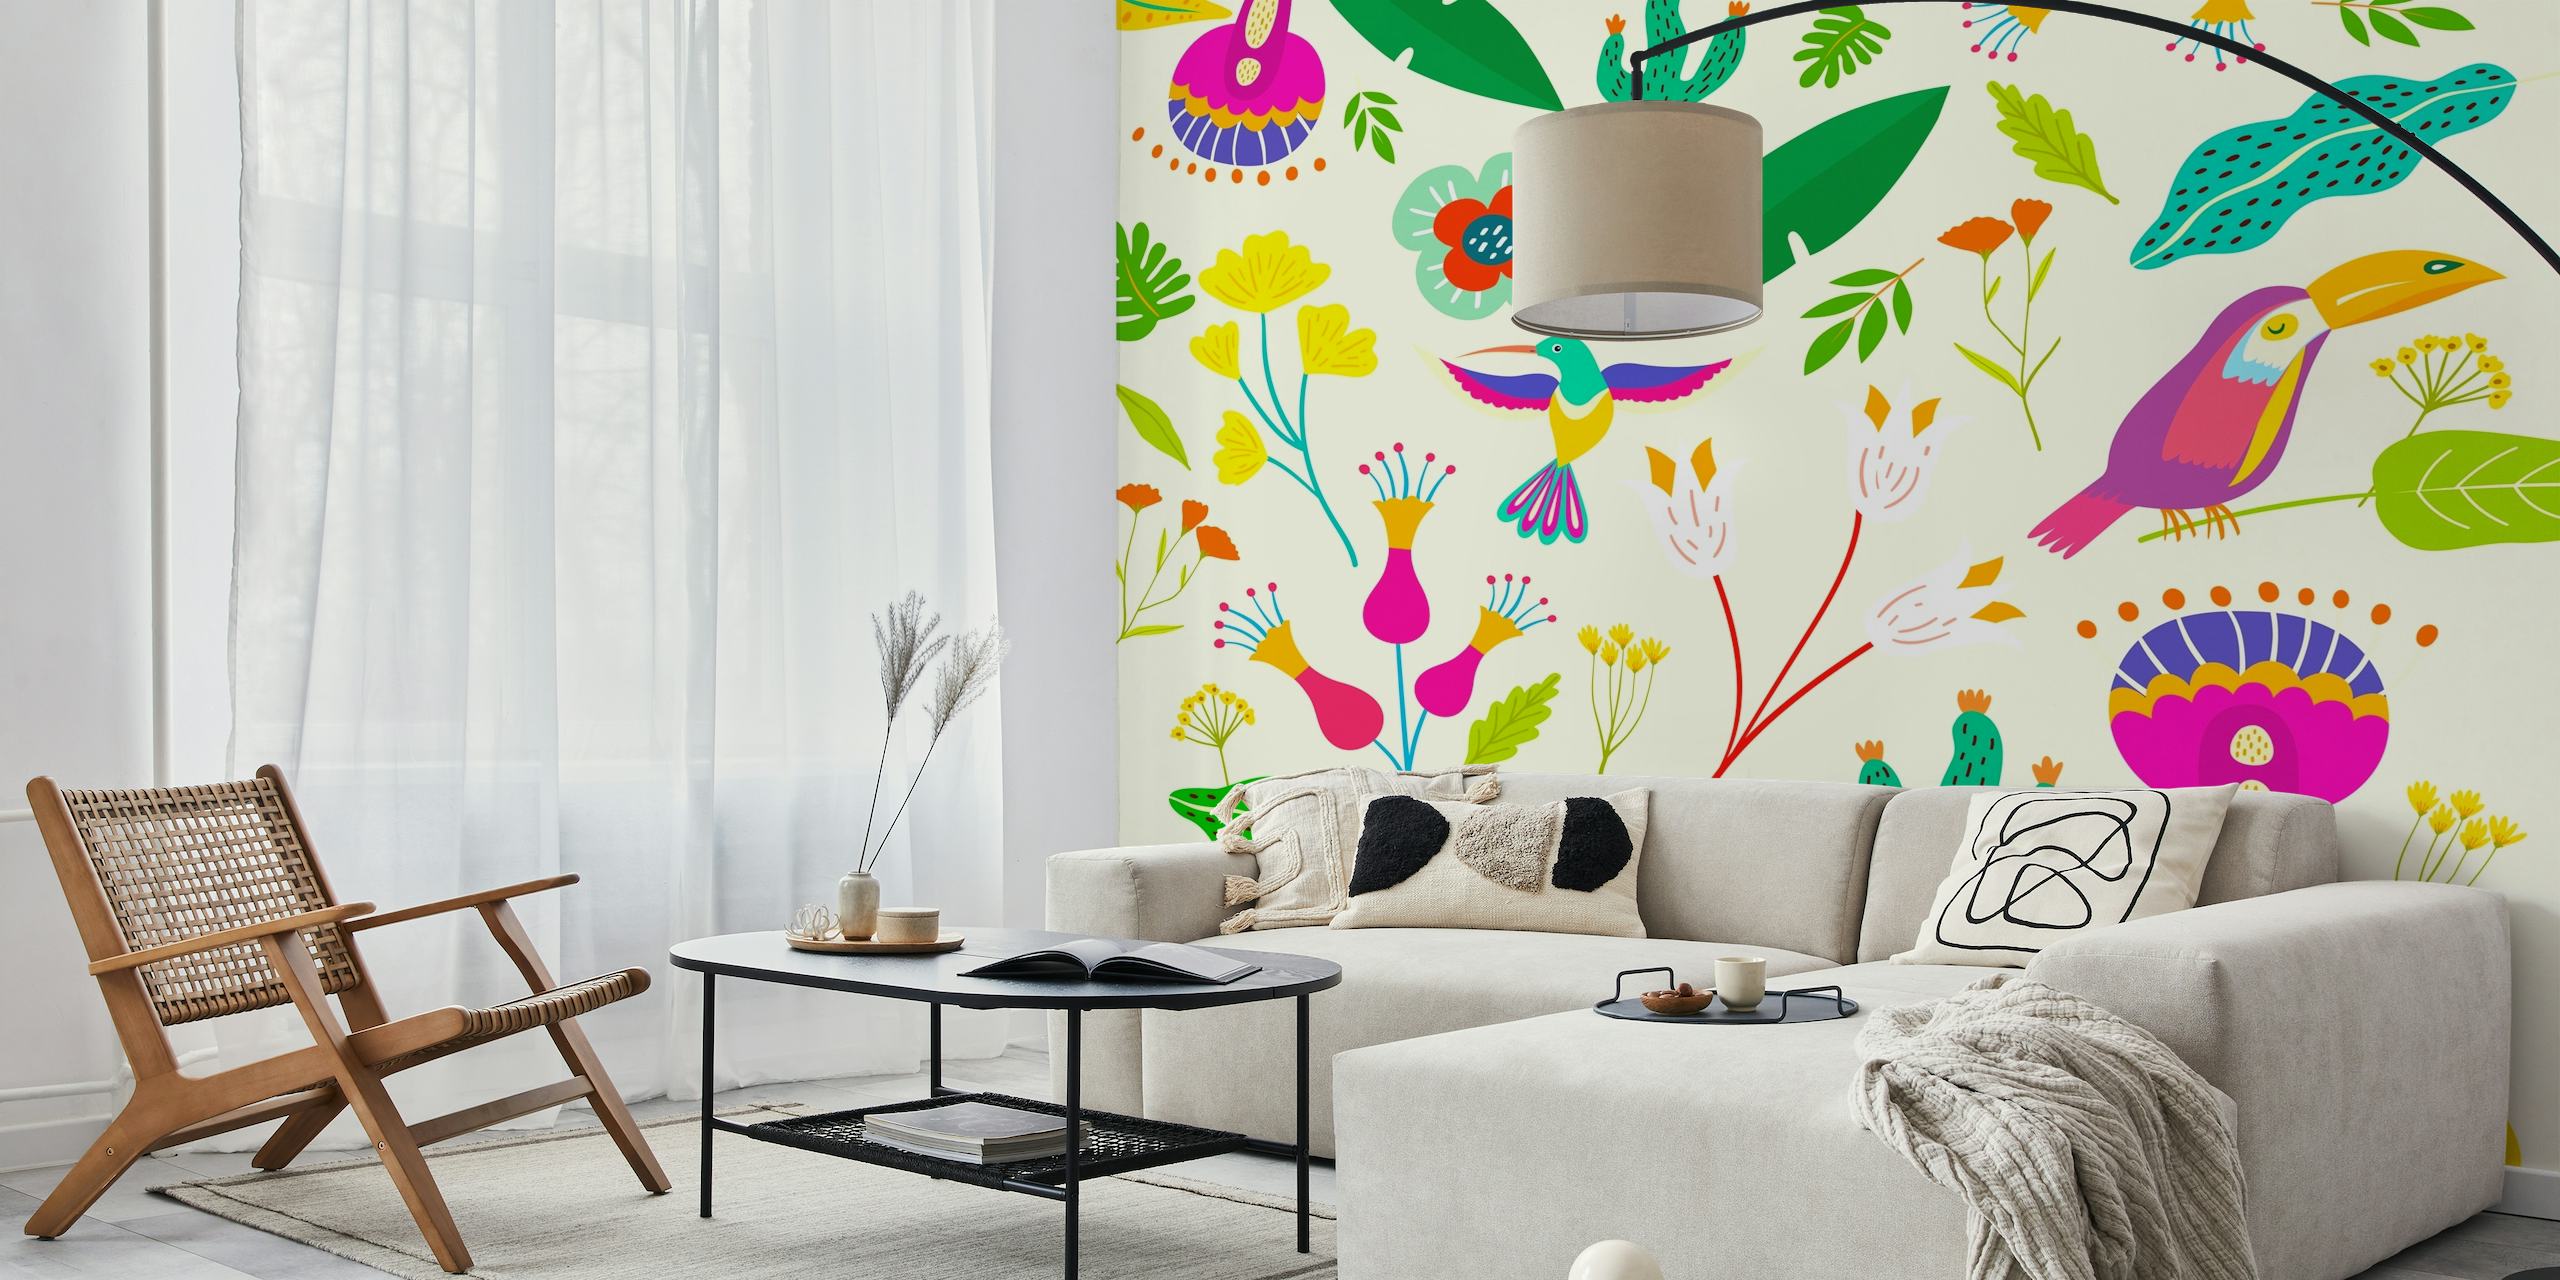 Frida Tropical Clean zidna slika sa stiliziranim pticama i tropskim biljkama